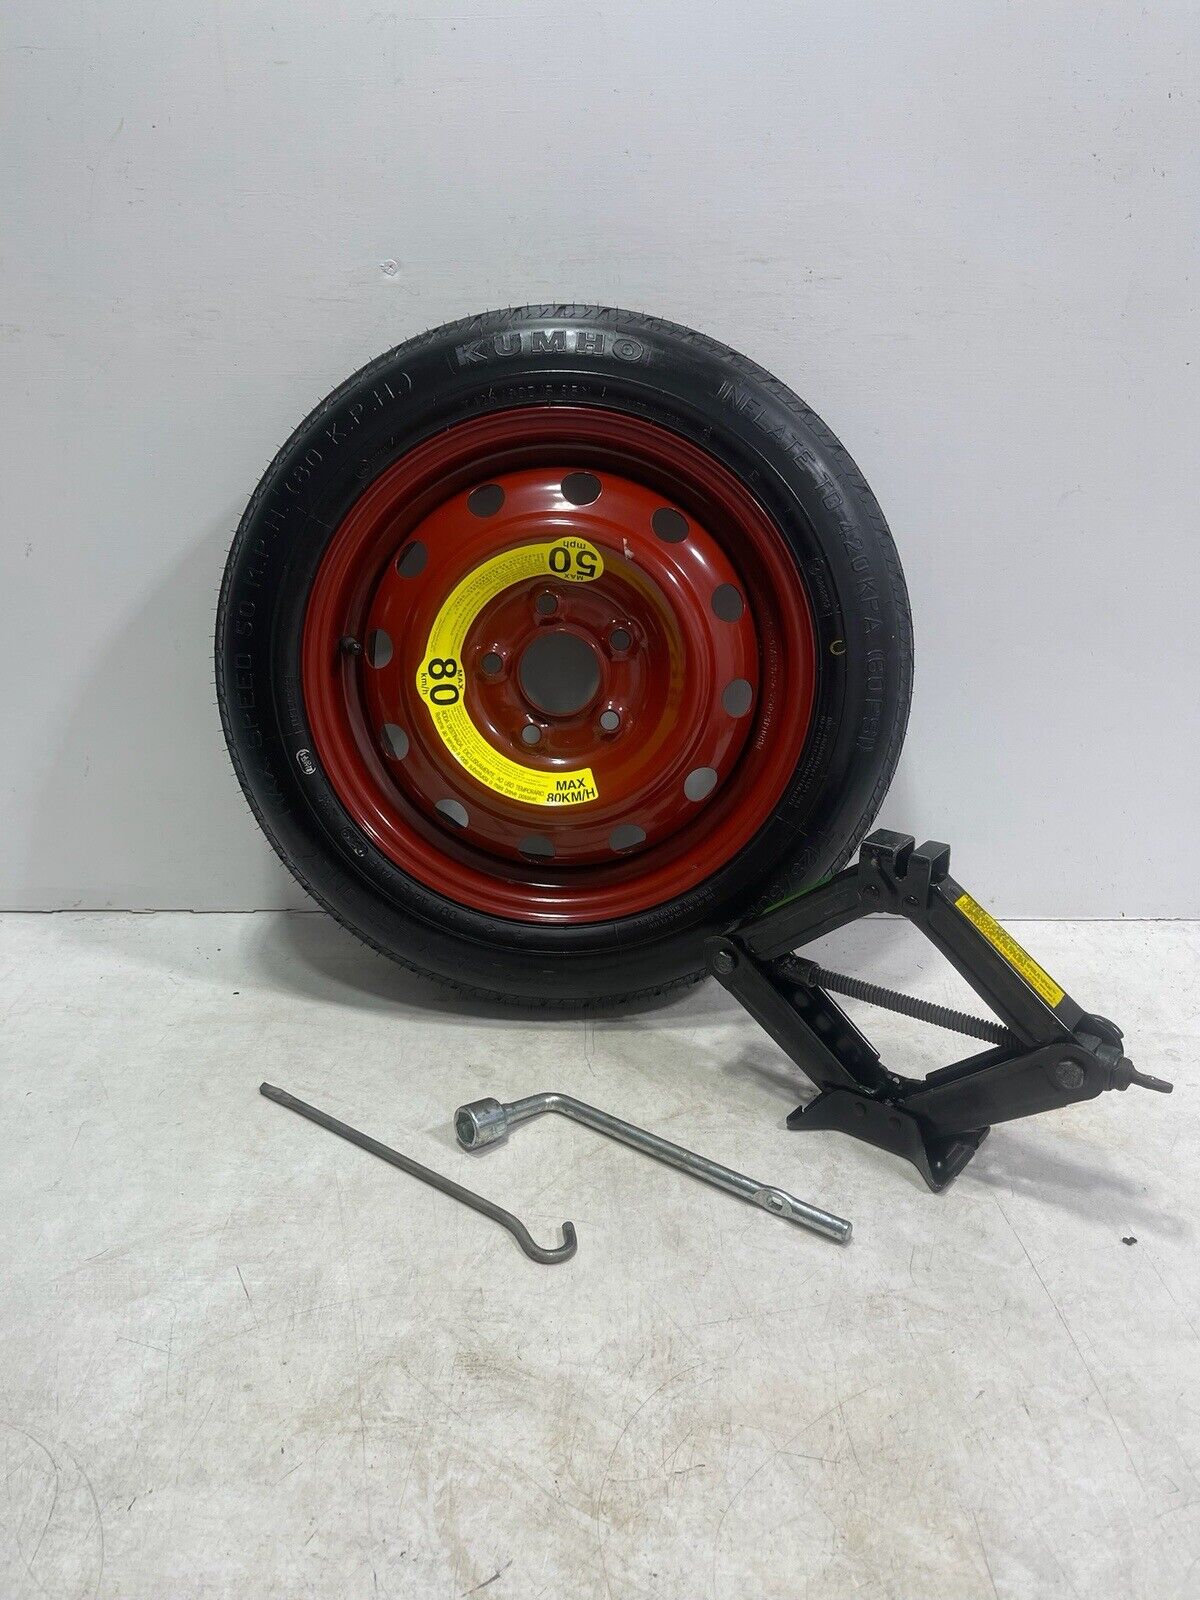 2010 - 2013 Kia Soul Spare wheel Tire & Jack Kit Compact Donut OEM T125/80D15